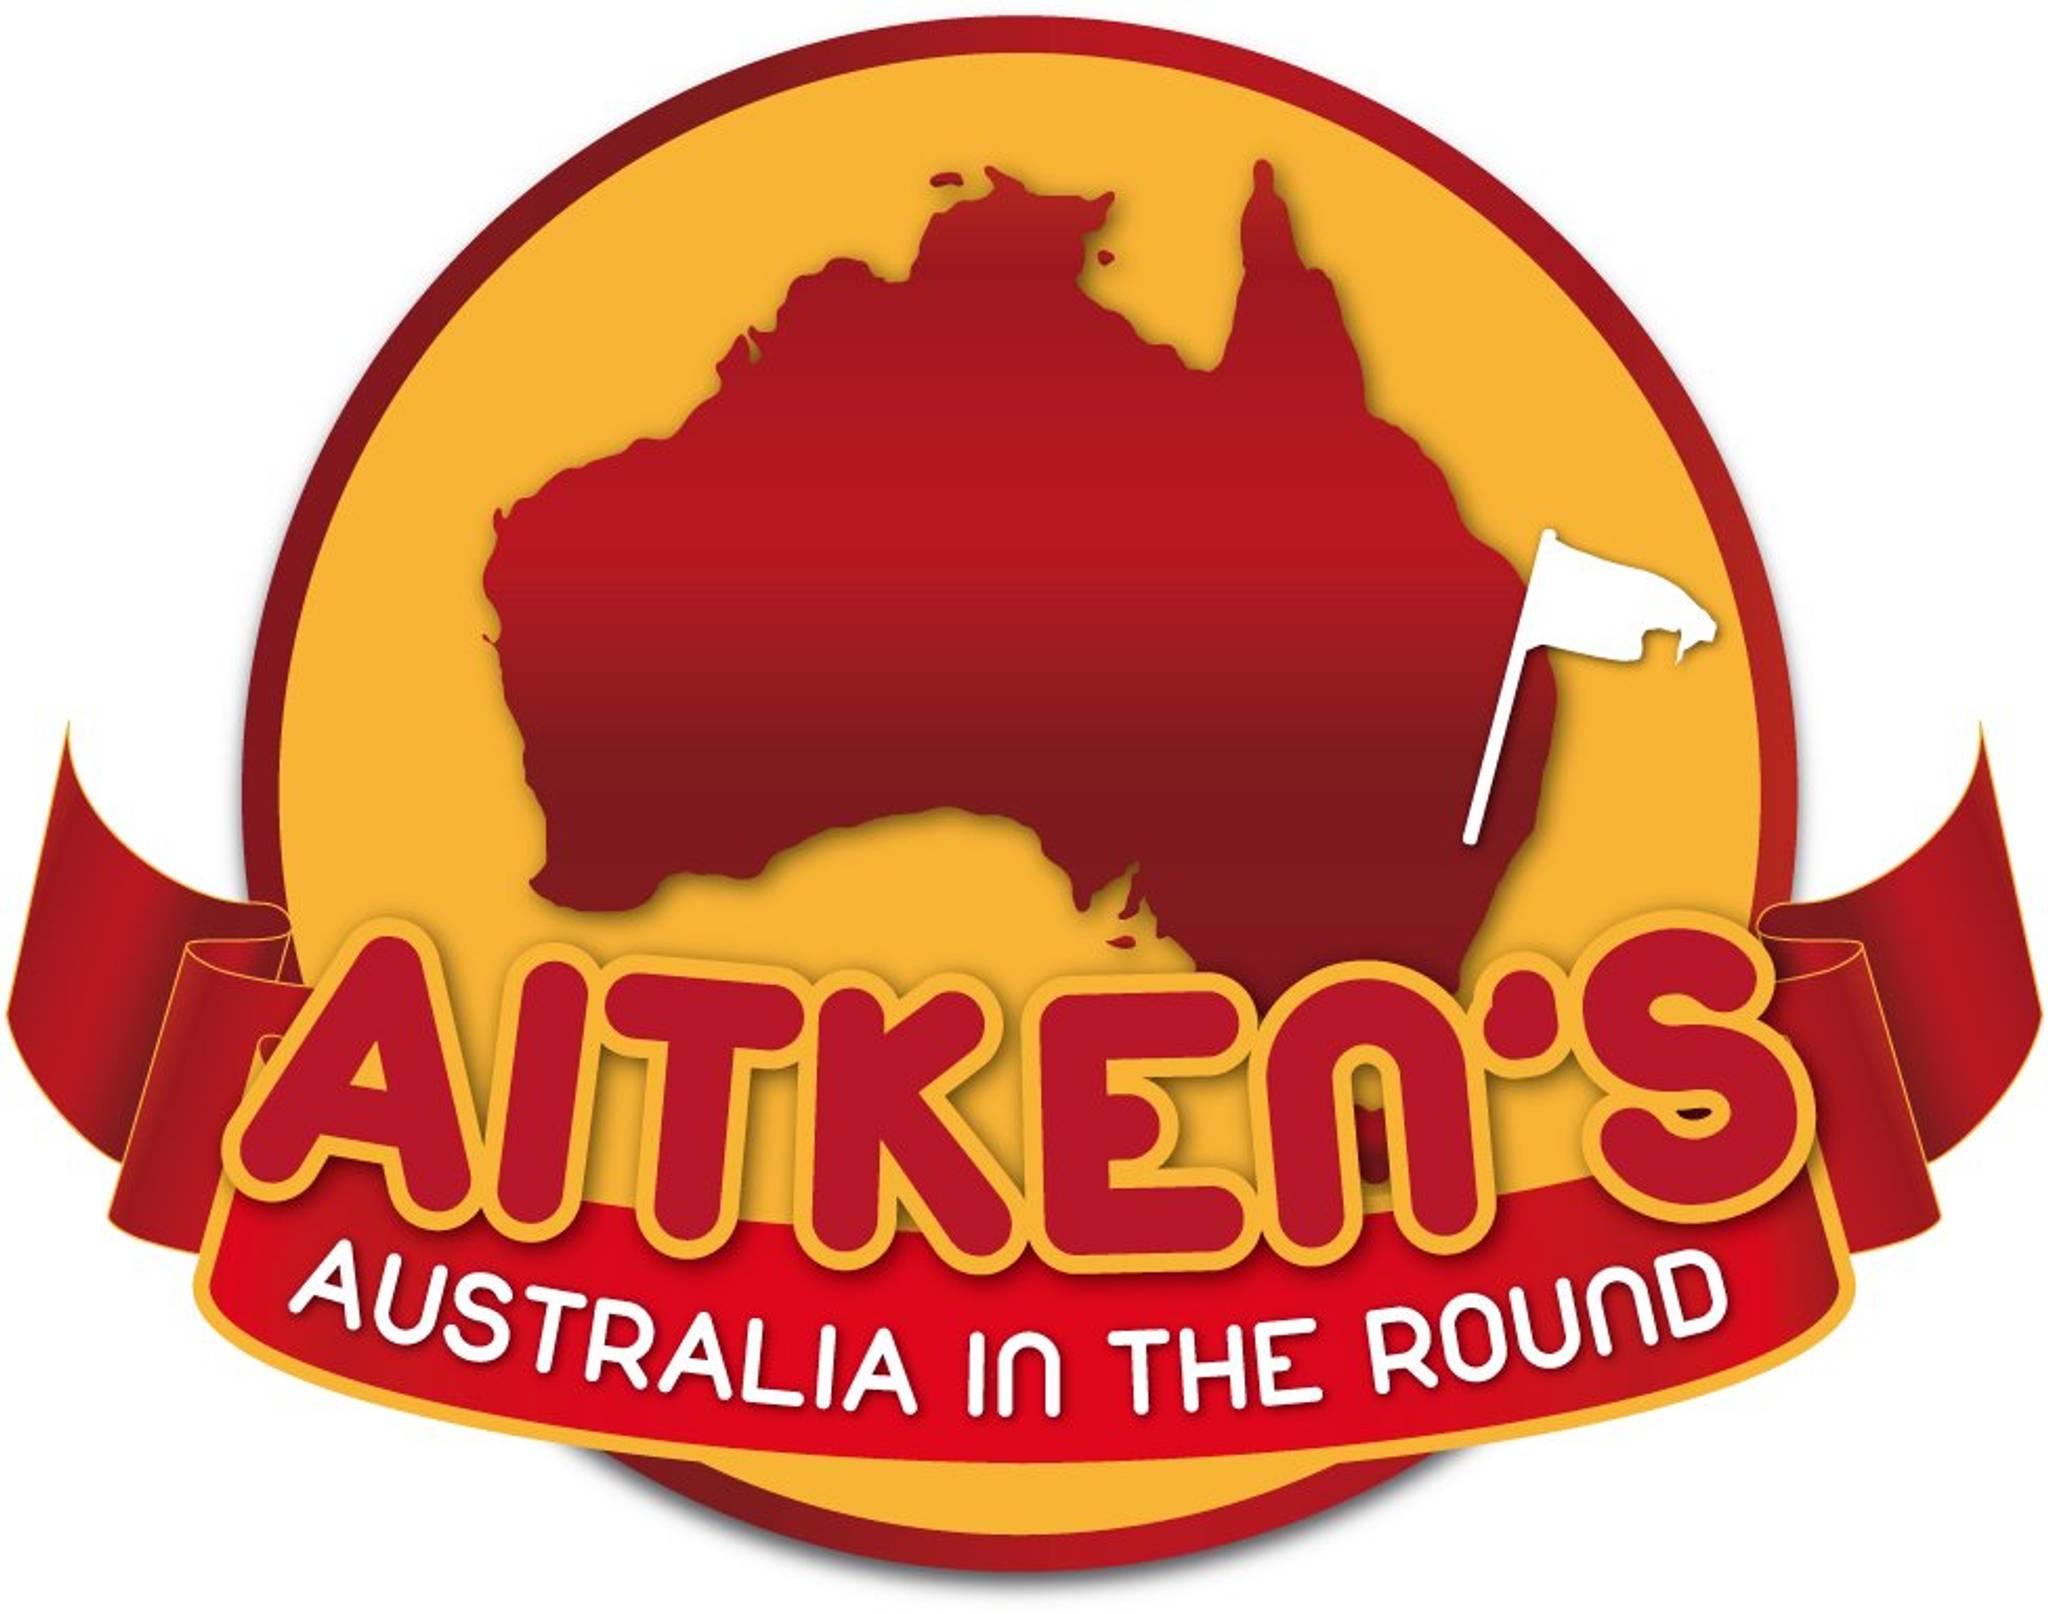 &mdash;Aitken's Australia In The Round